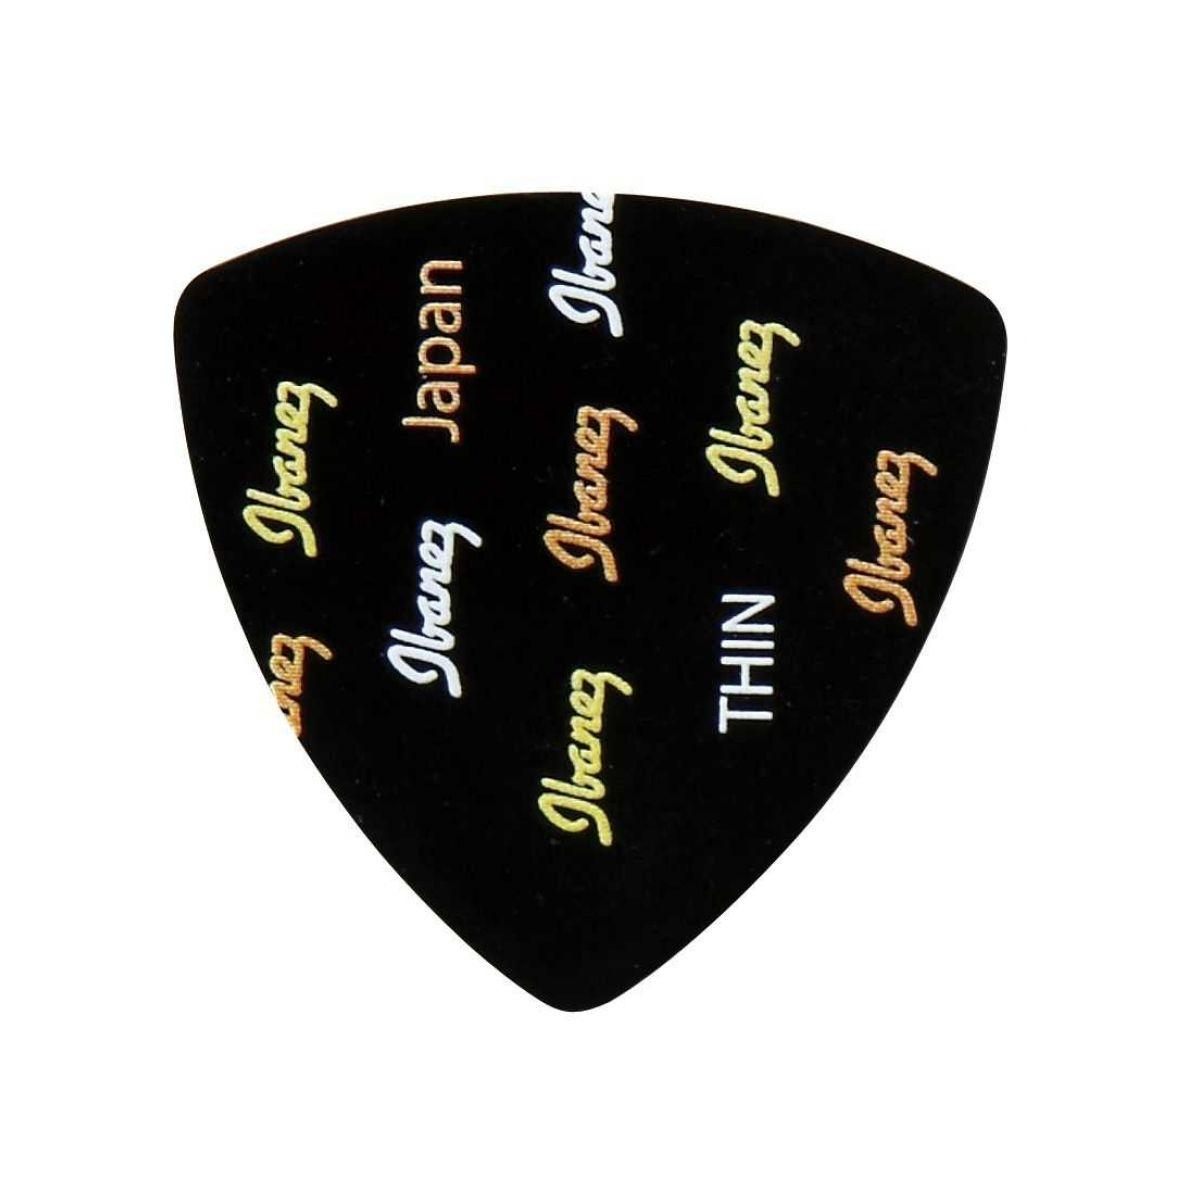 Ibanez plettro triangolare - thin - nero c/pattern logo acustico